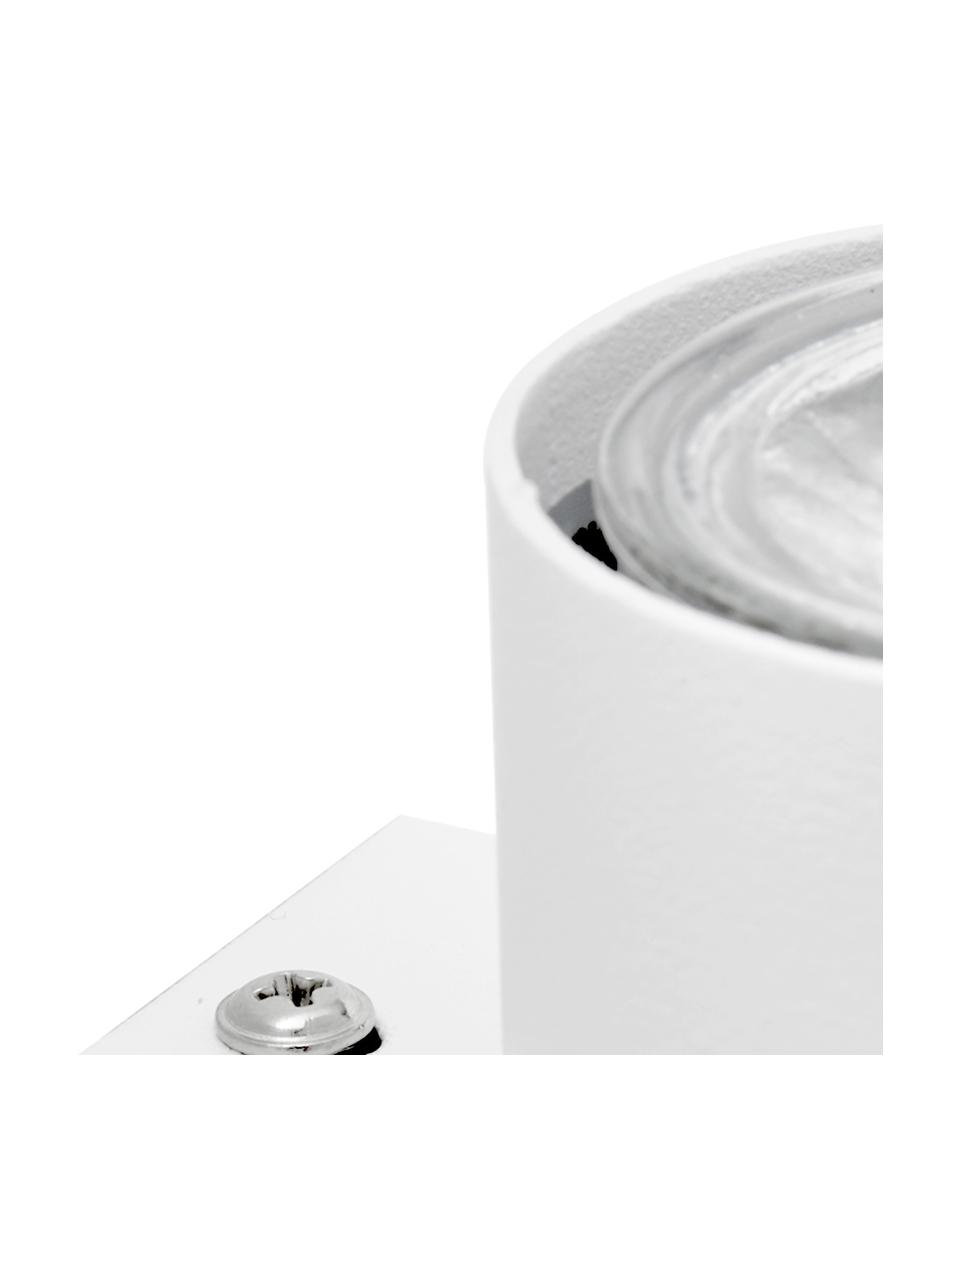 Wandstrahler Paul in Weiß, Lampenschirm: Metall, pulverbeschichtet, Weiß, 6 x 9 cm